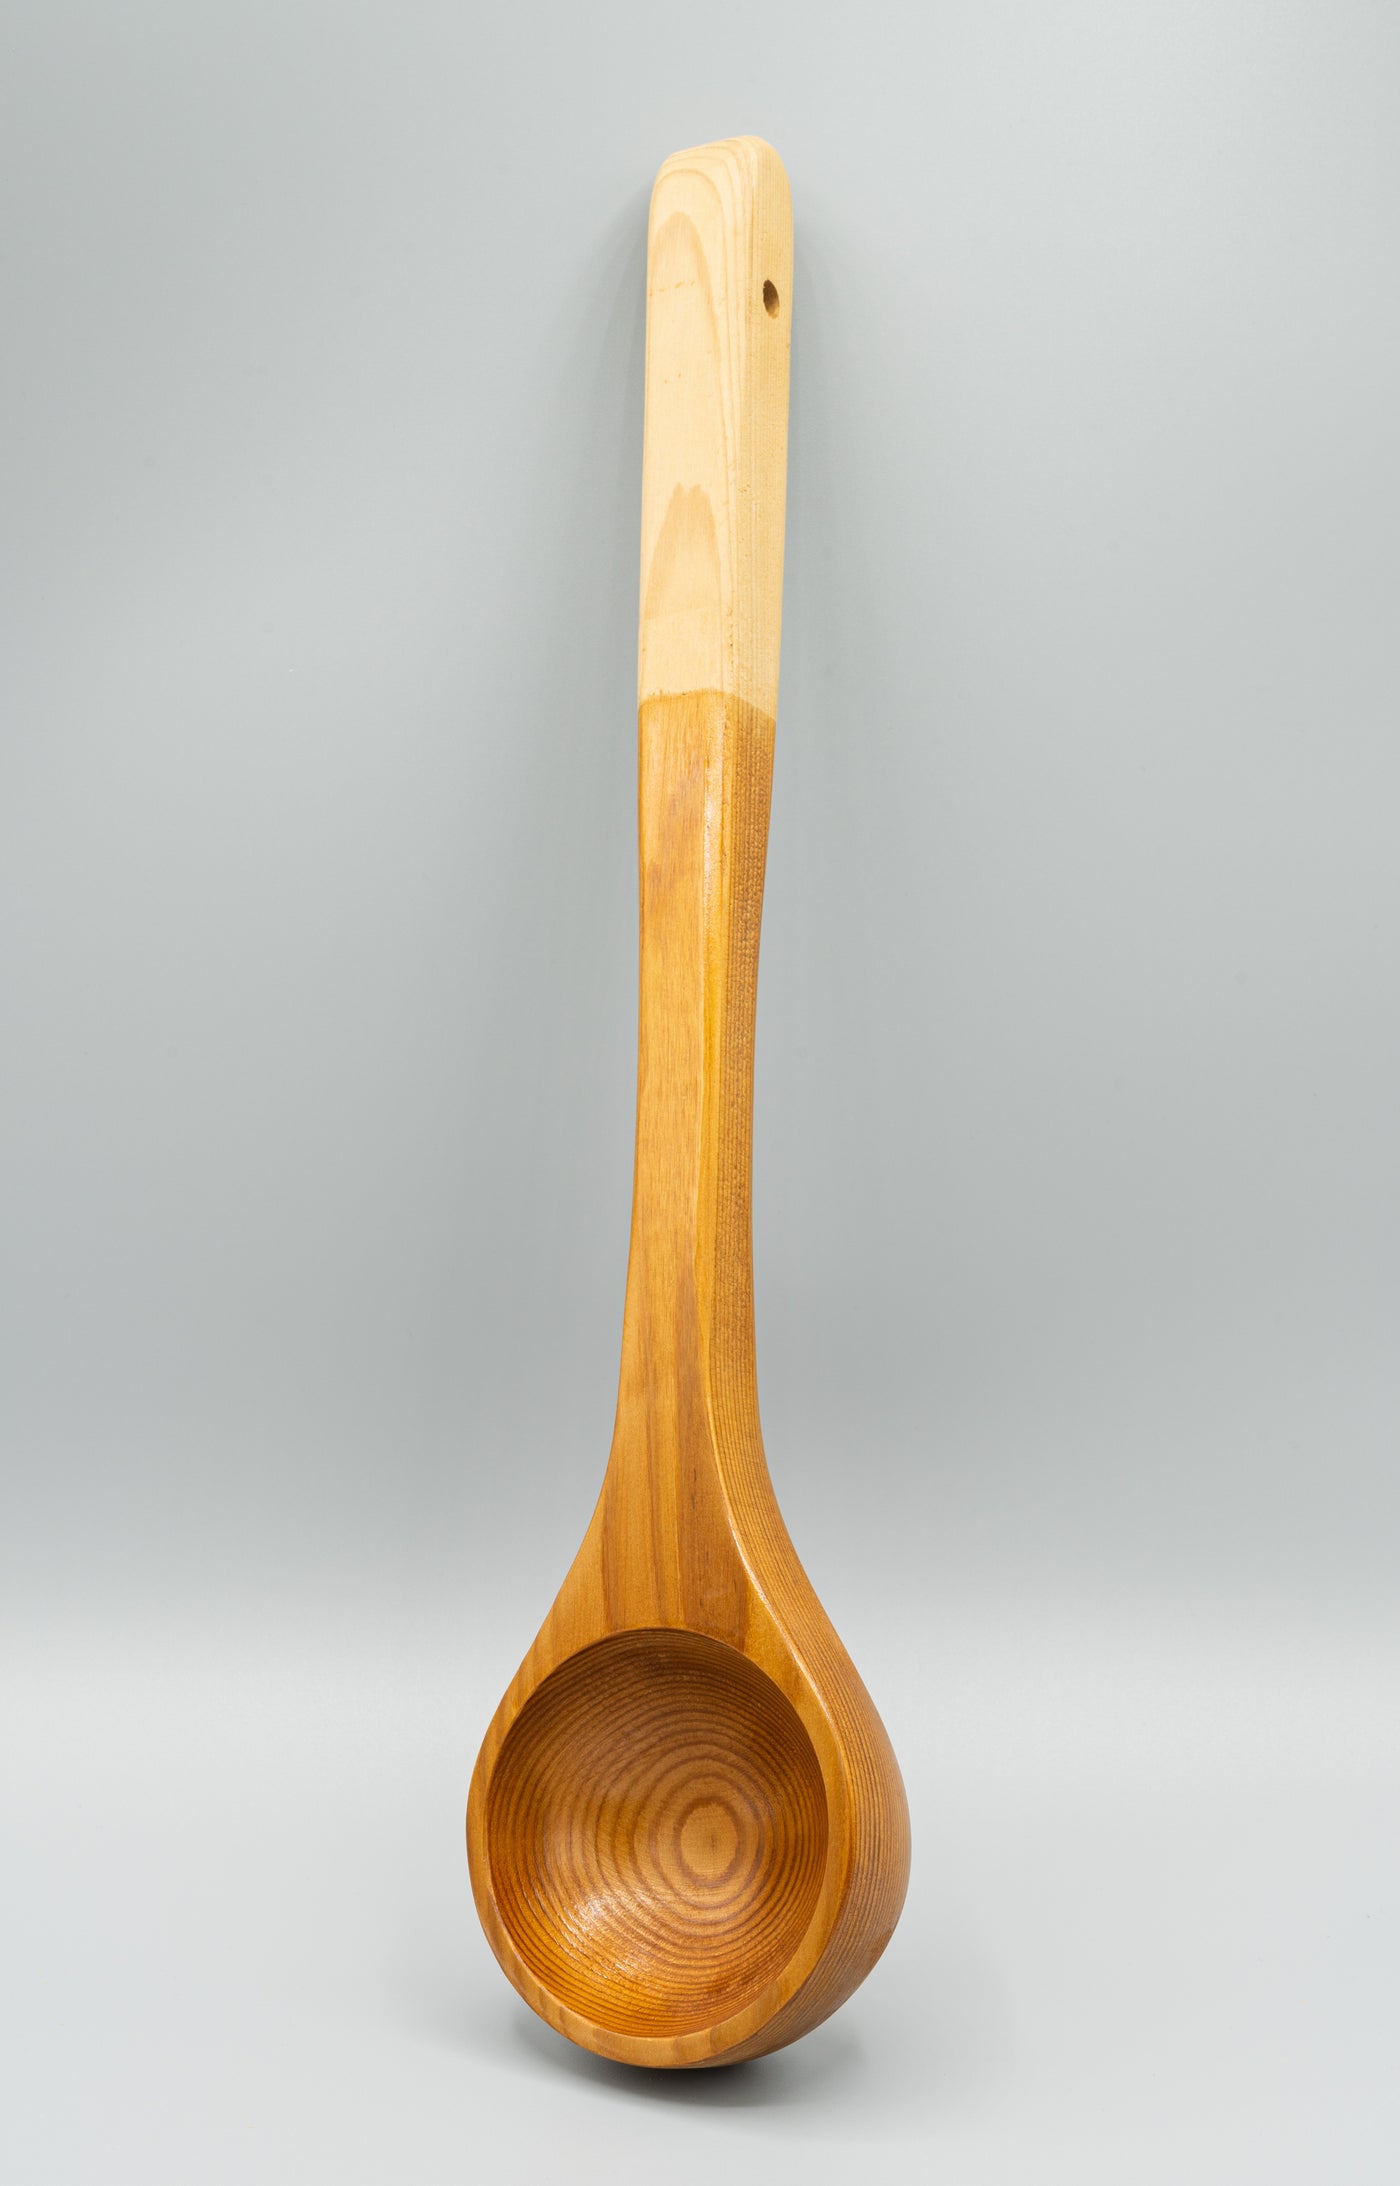 Wooden Ladle Medium